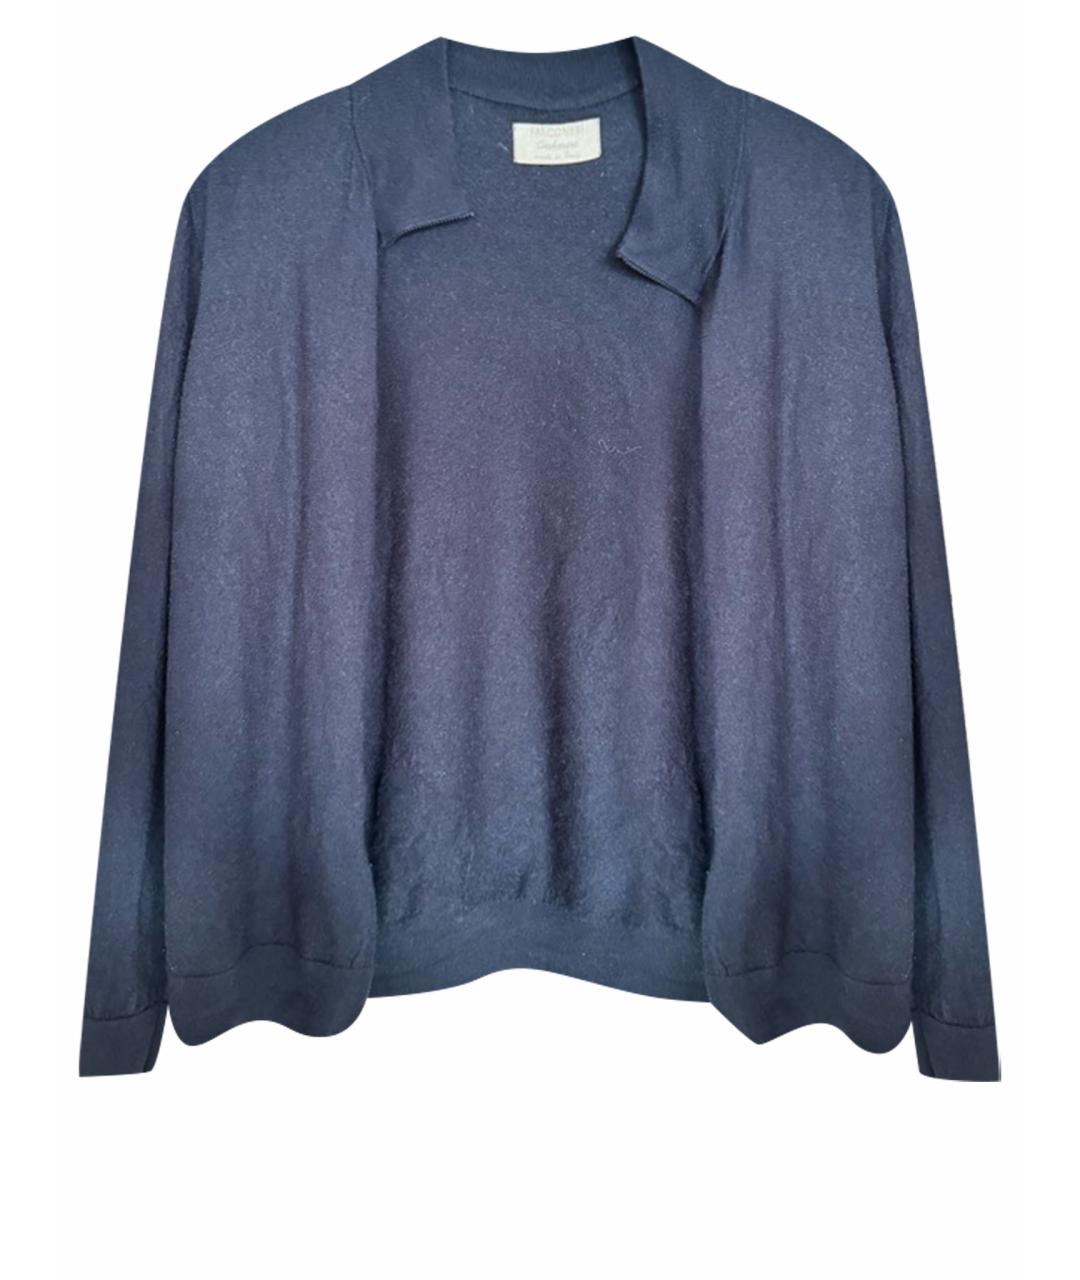 FALCONERI Синий кашемировый джемпер / свитер, фото 1